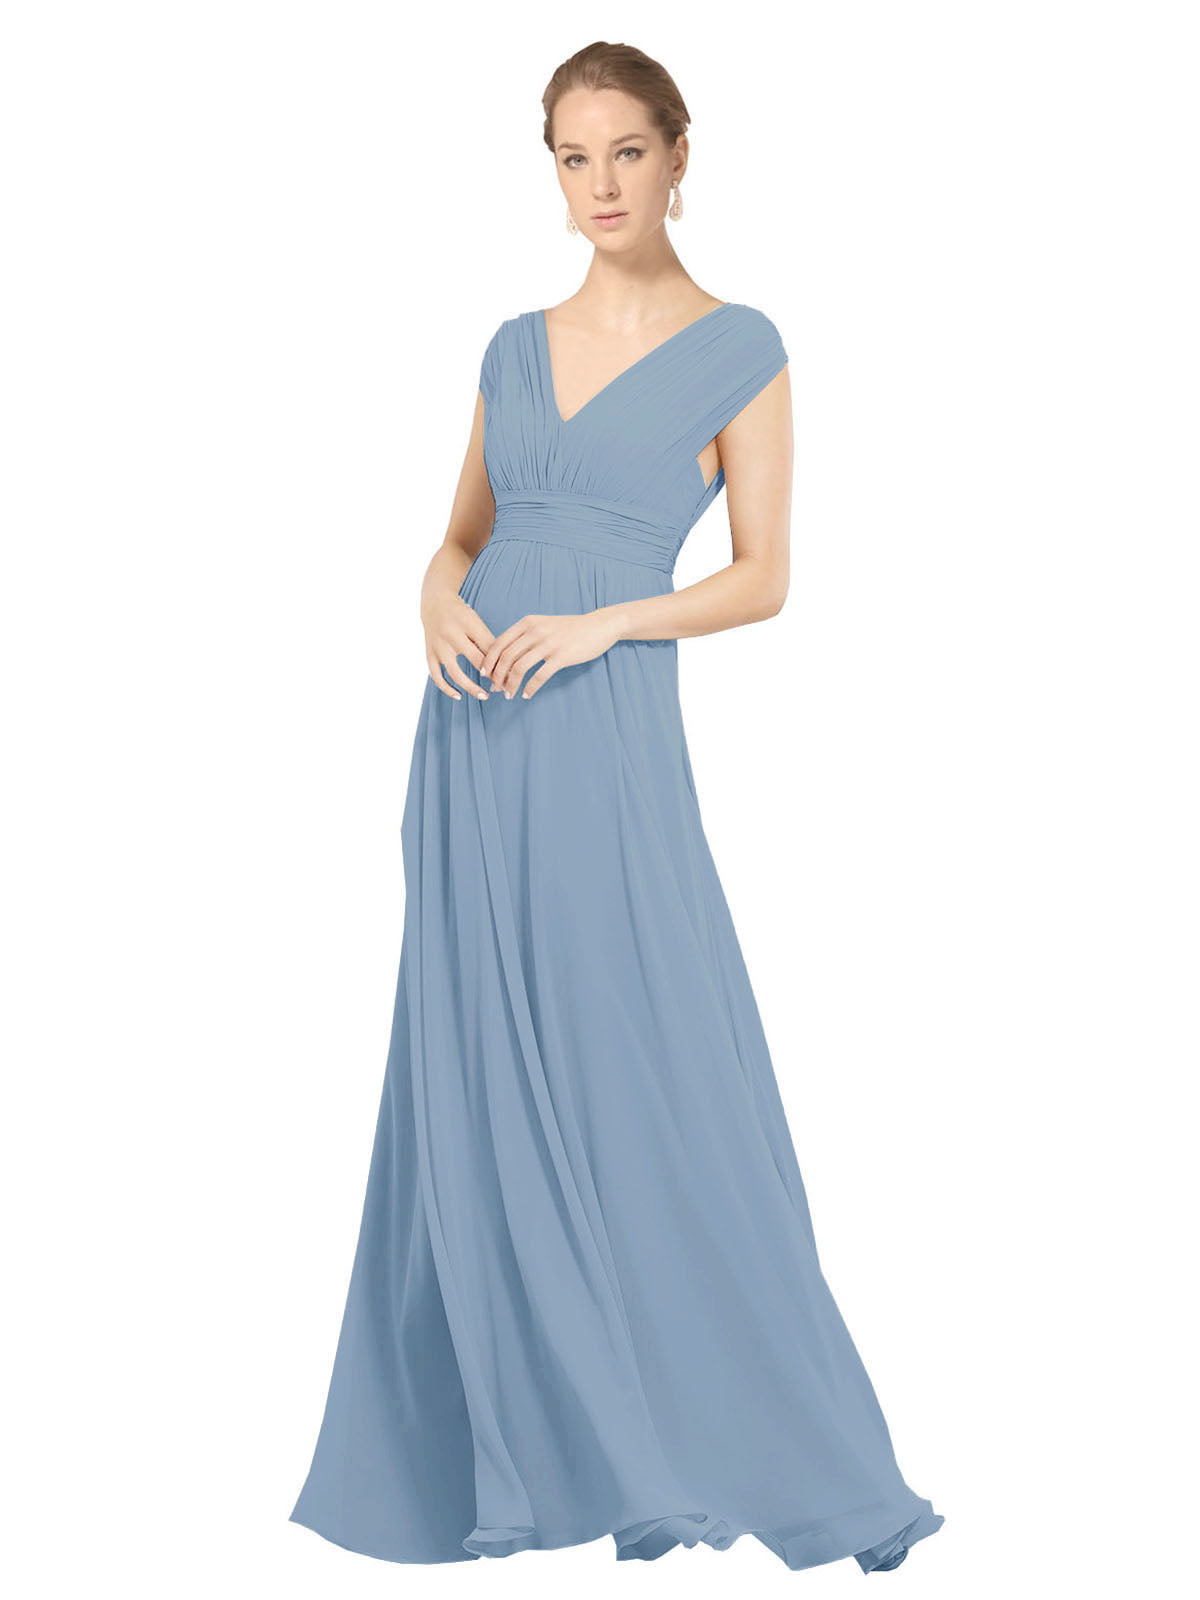 Dusty Blue A-Line V-Neck Sleeveless Long Bridesmaid Dress Faith